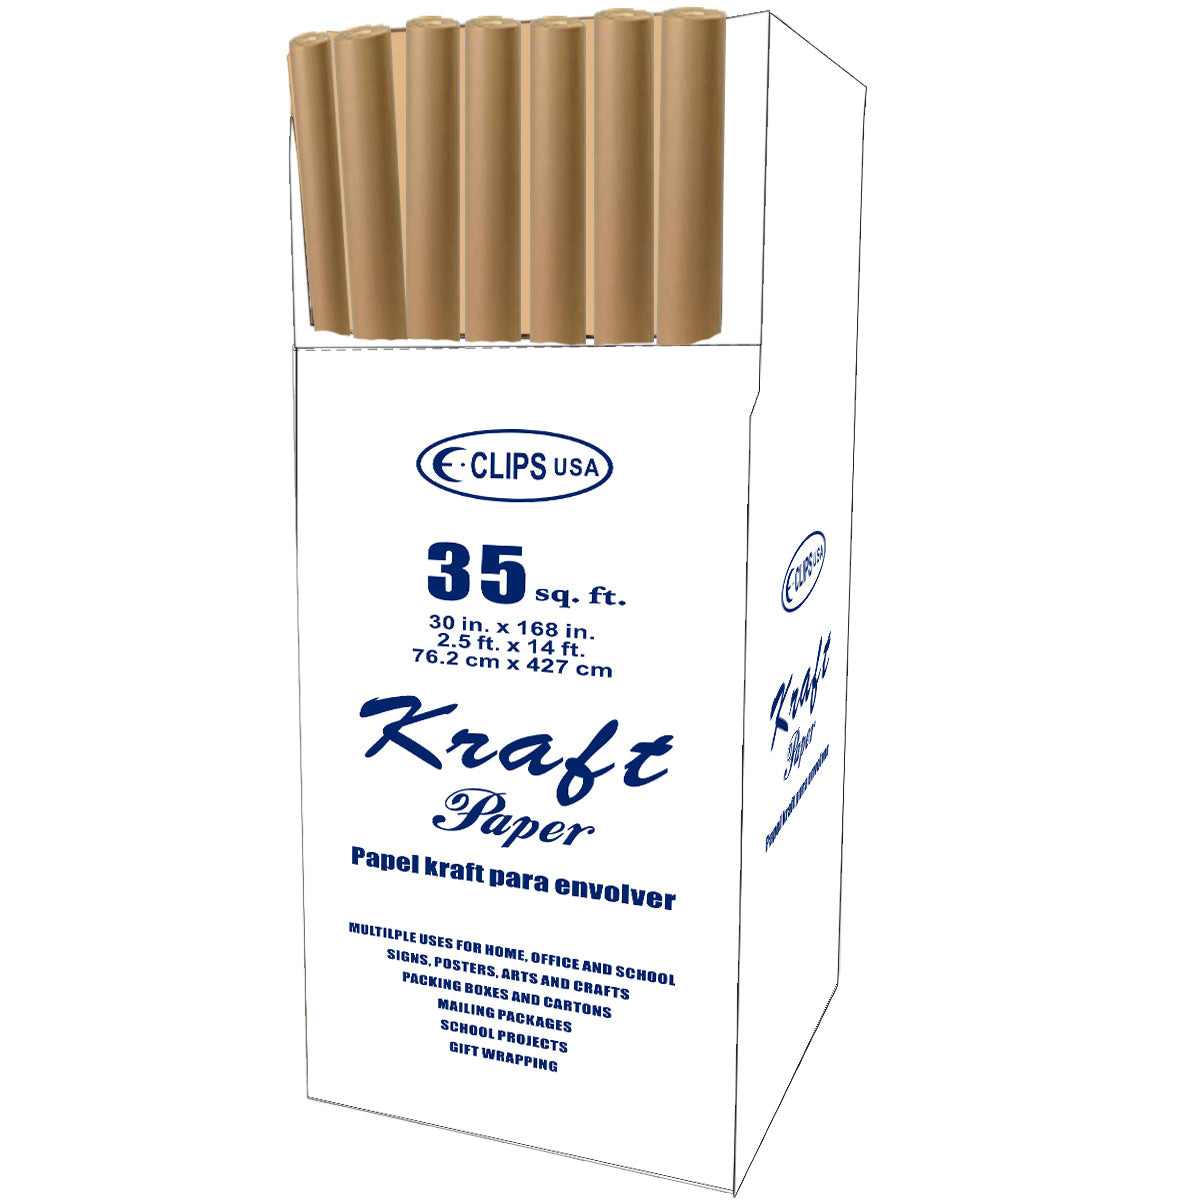 Kraft Paper 2.5' x 14'